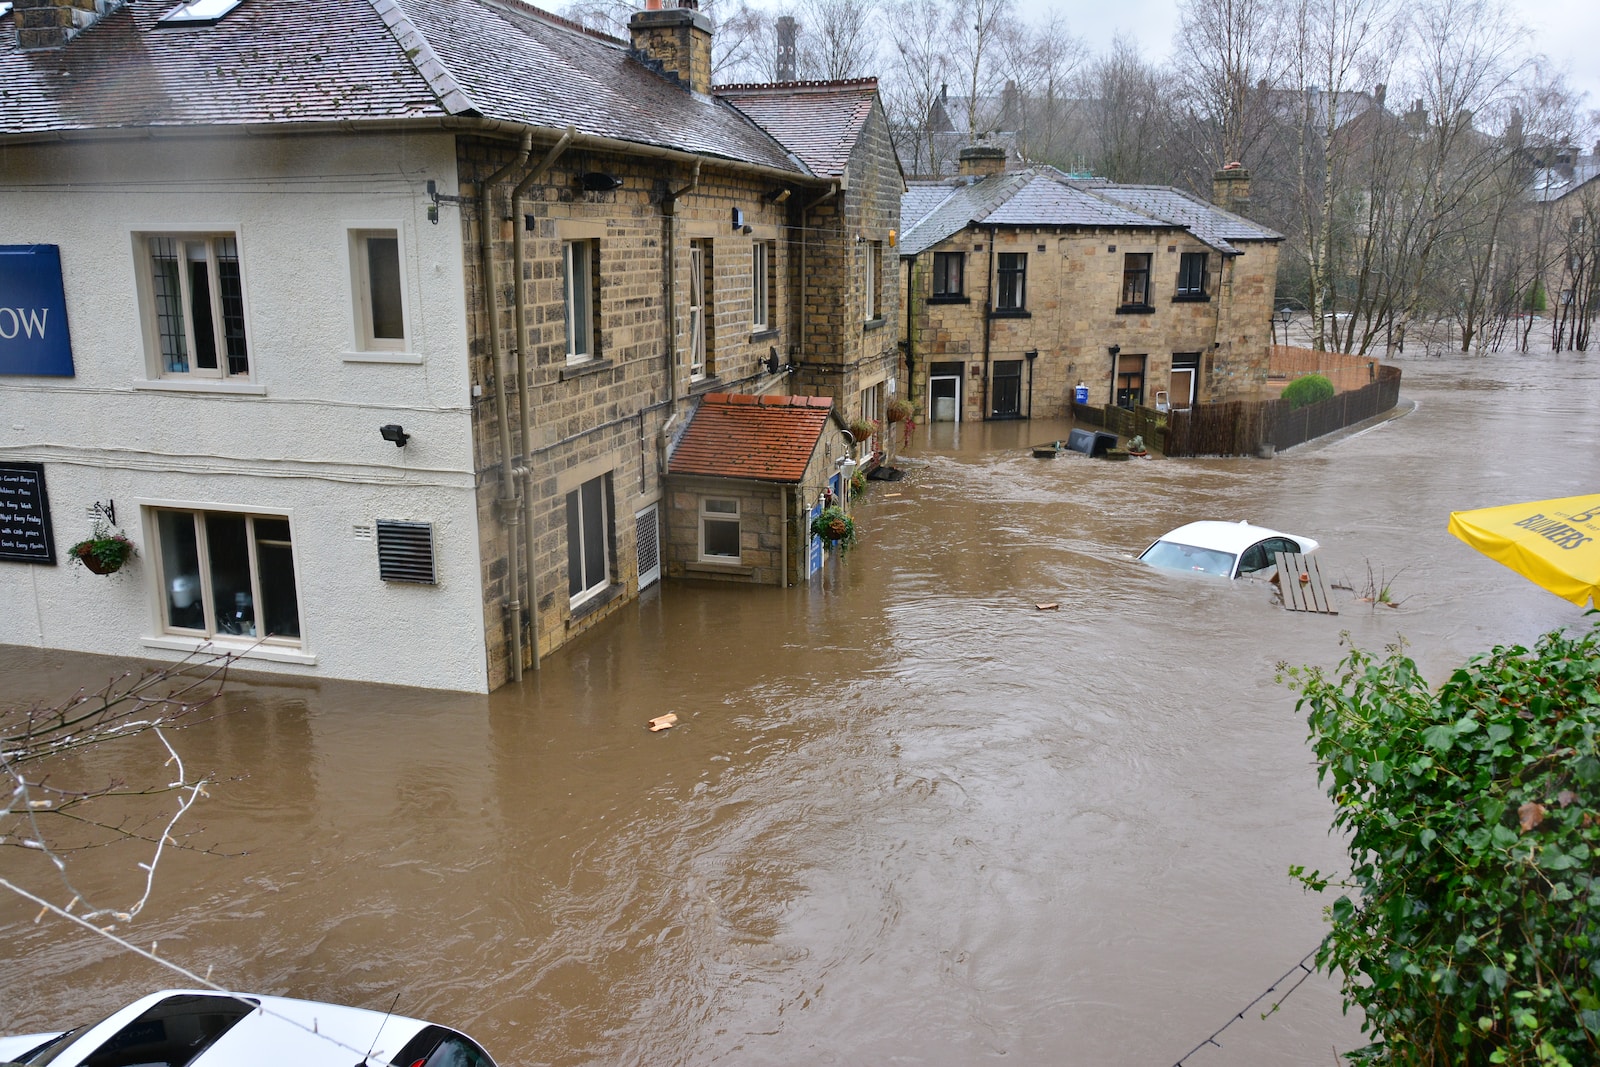 Comment réagir face à une menace d'inondation et quoi faire en cas d'inondation de votre maison ?